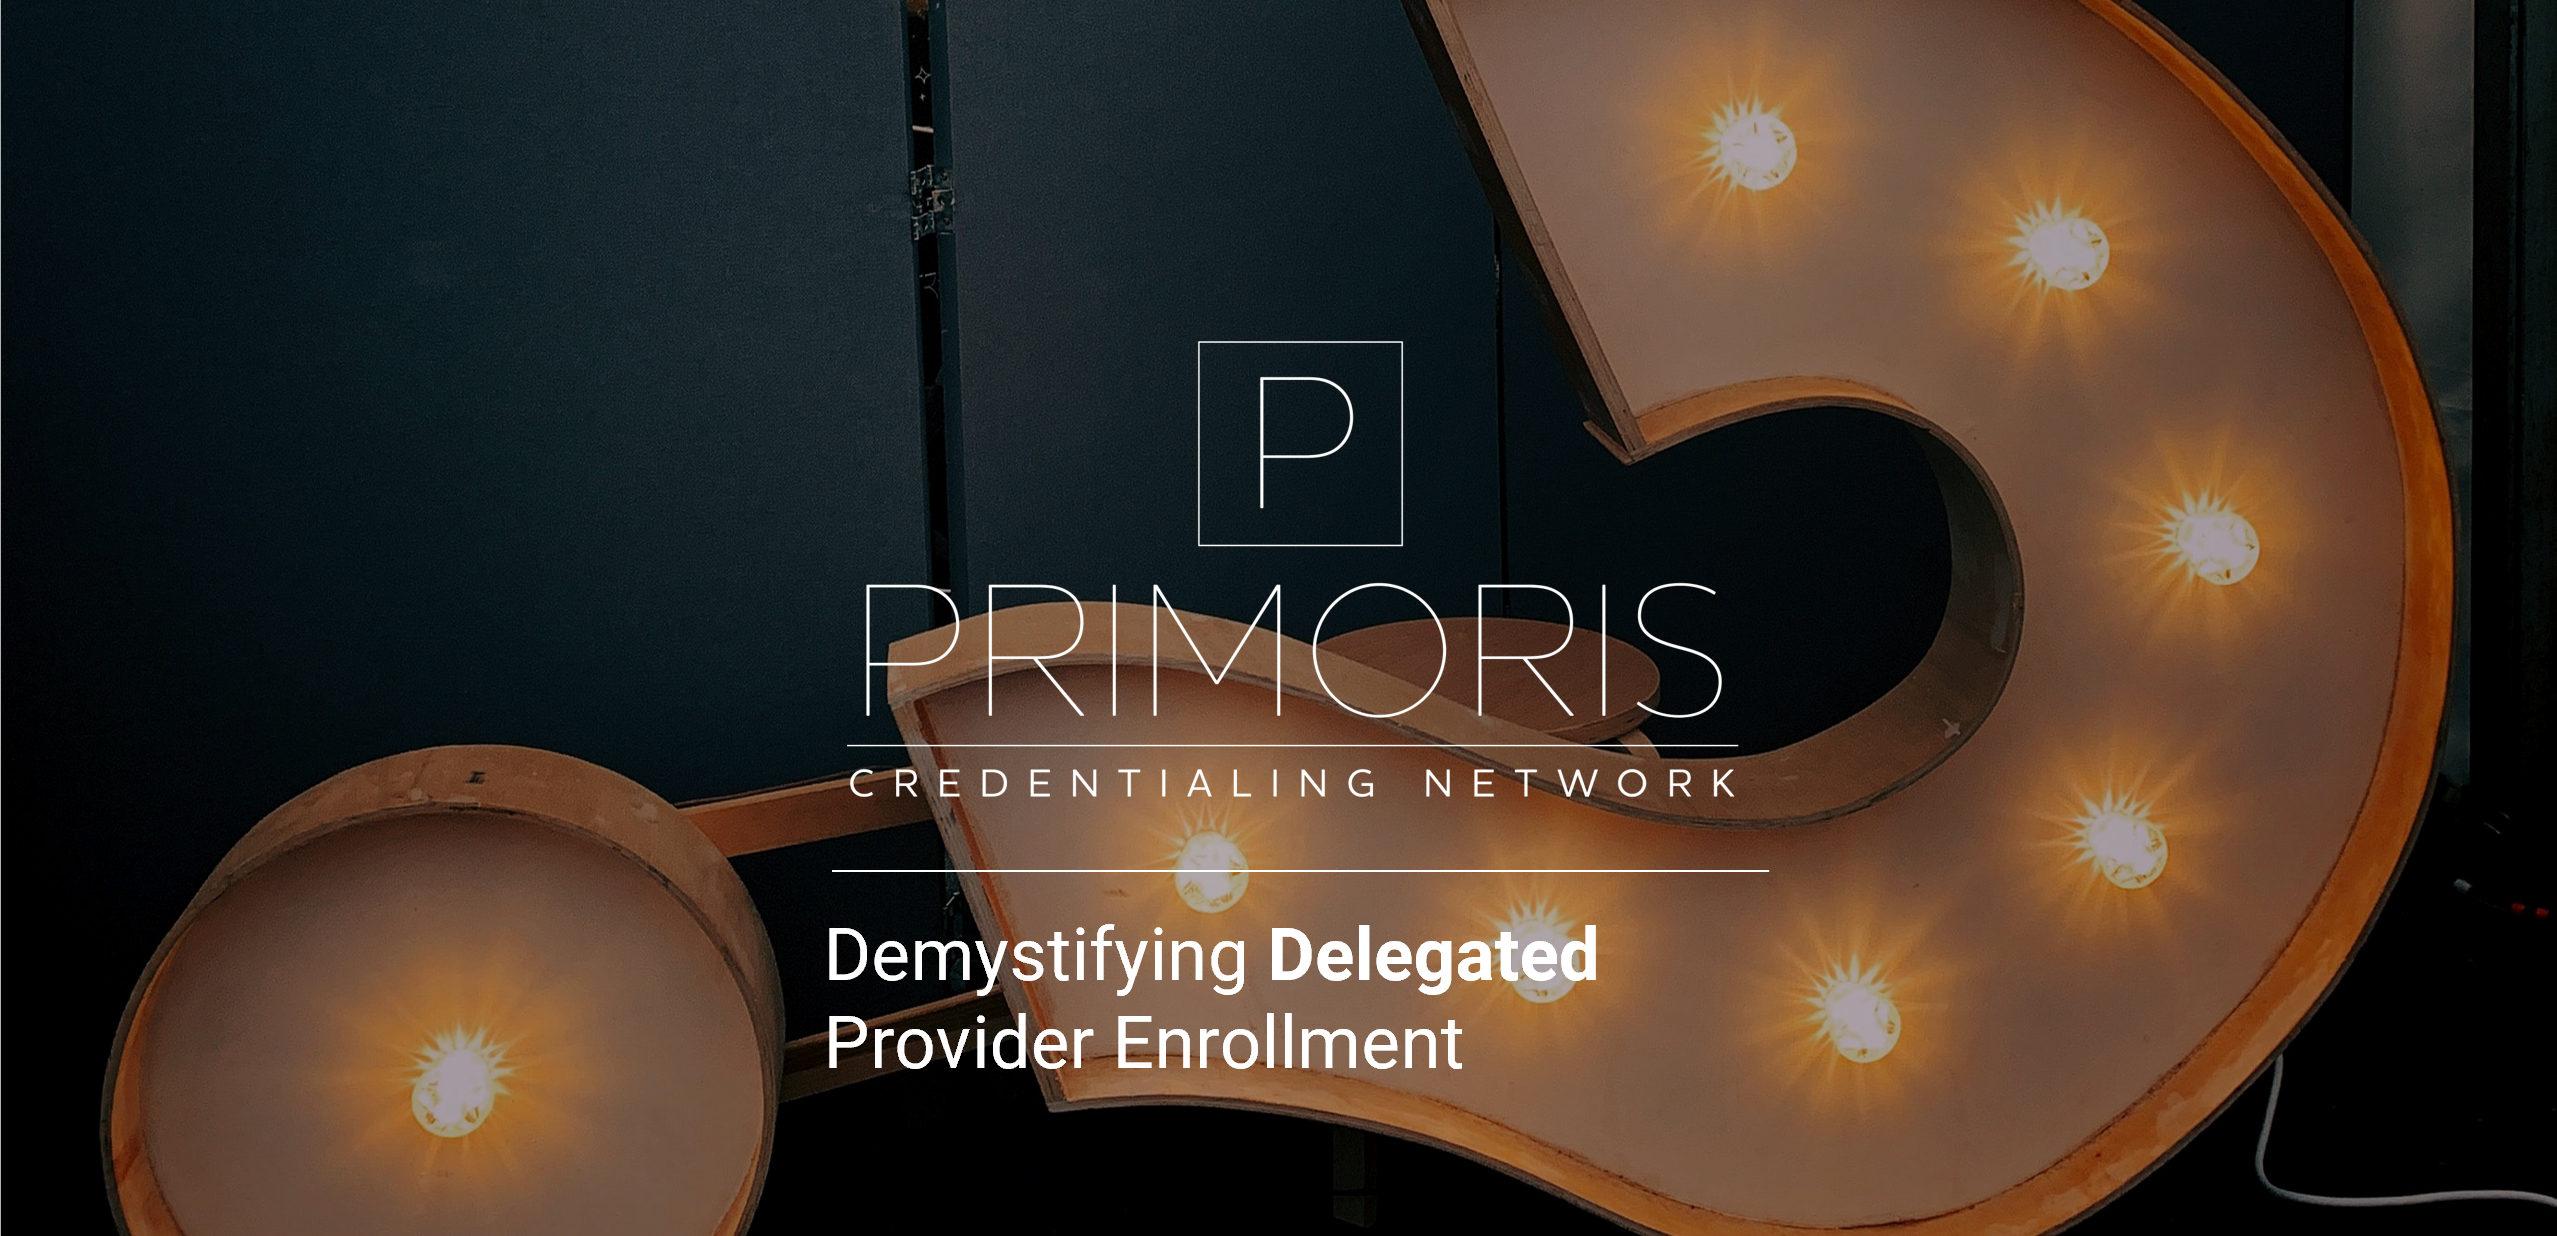 Demystifying Delegated Provider Enrollment